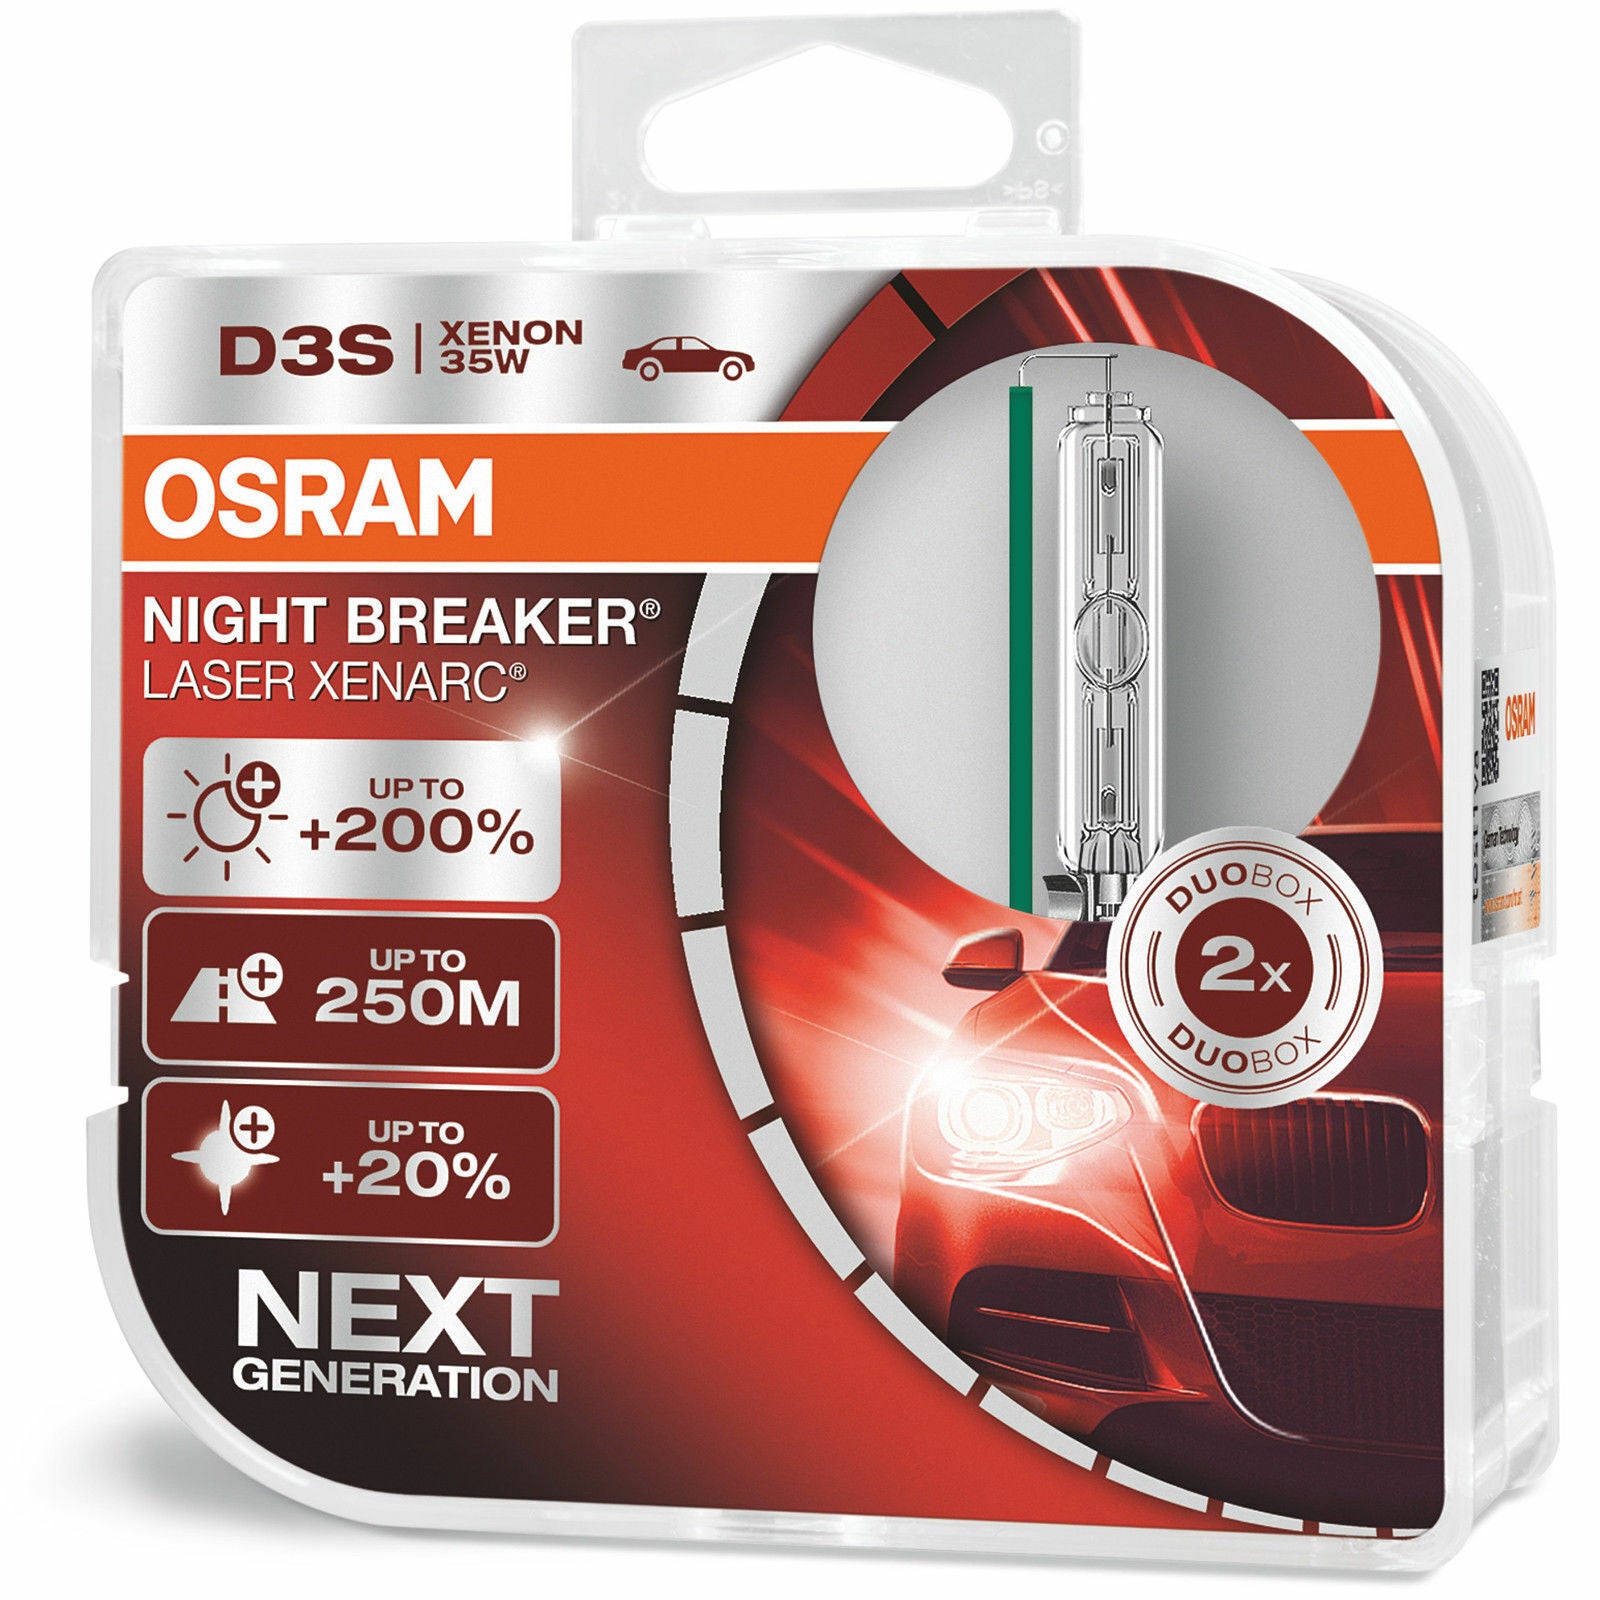 OSRAM D3S XENARC NIGHT BREAKER LASER - Twin Pack